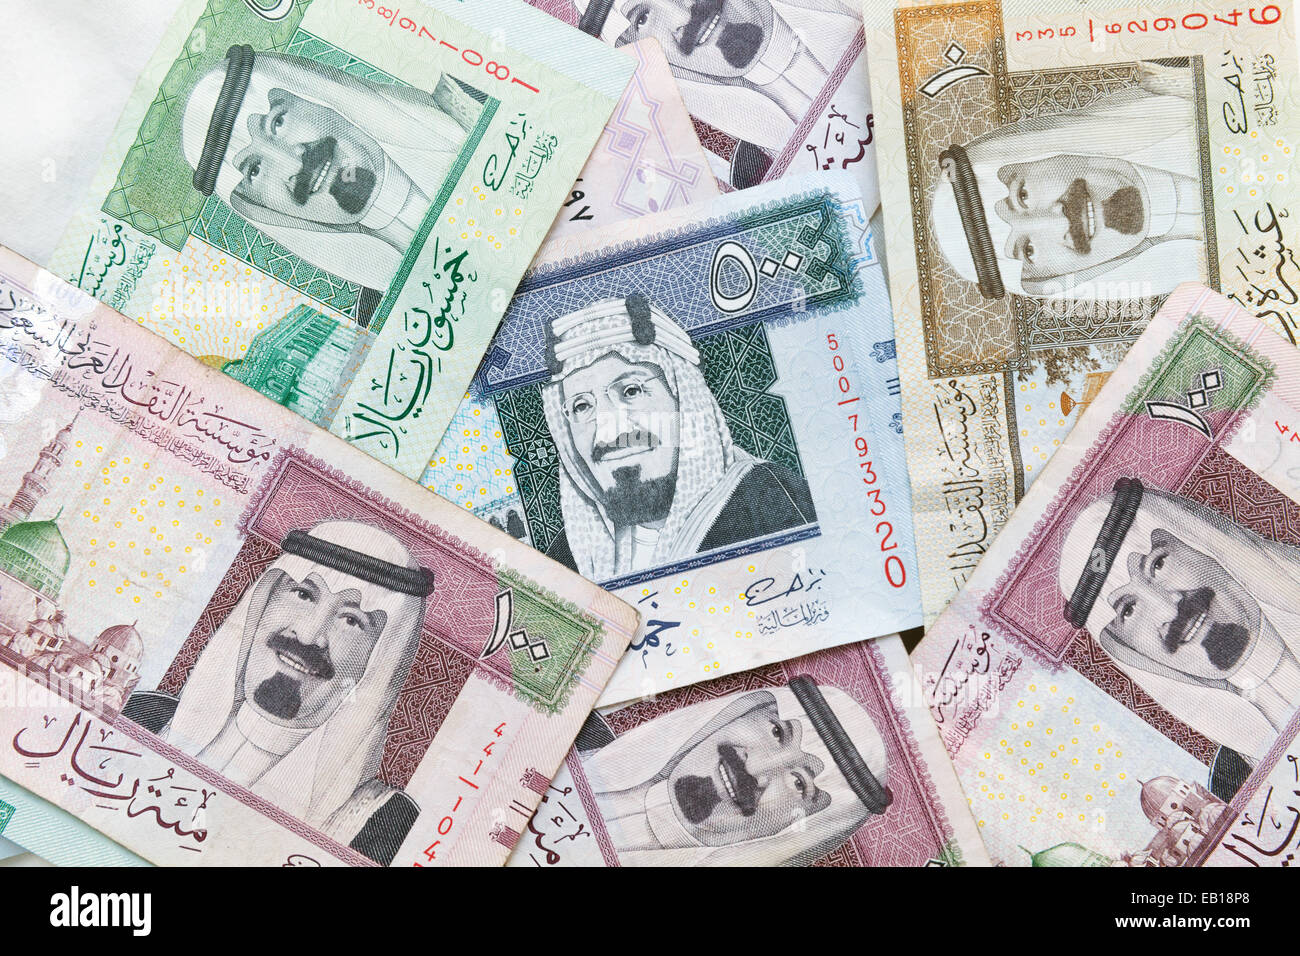 L'Arabie saoudite moderne argent, billets de fond photo gros plan de la texture Banque D'Images